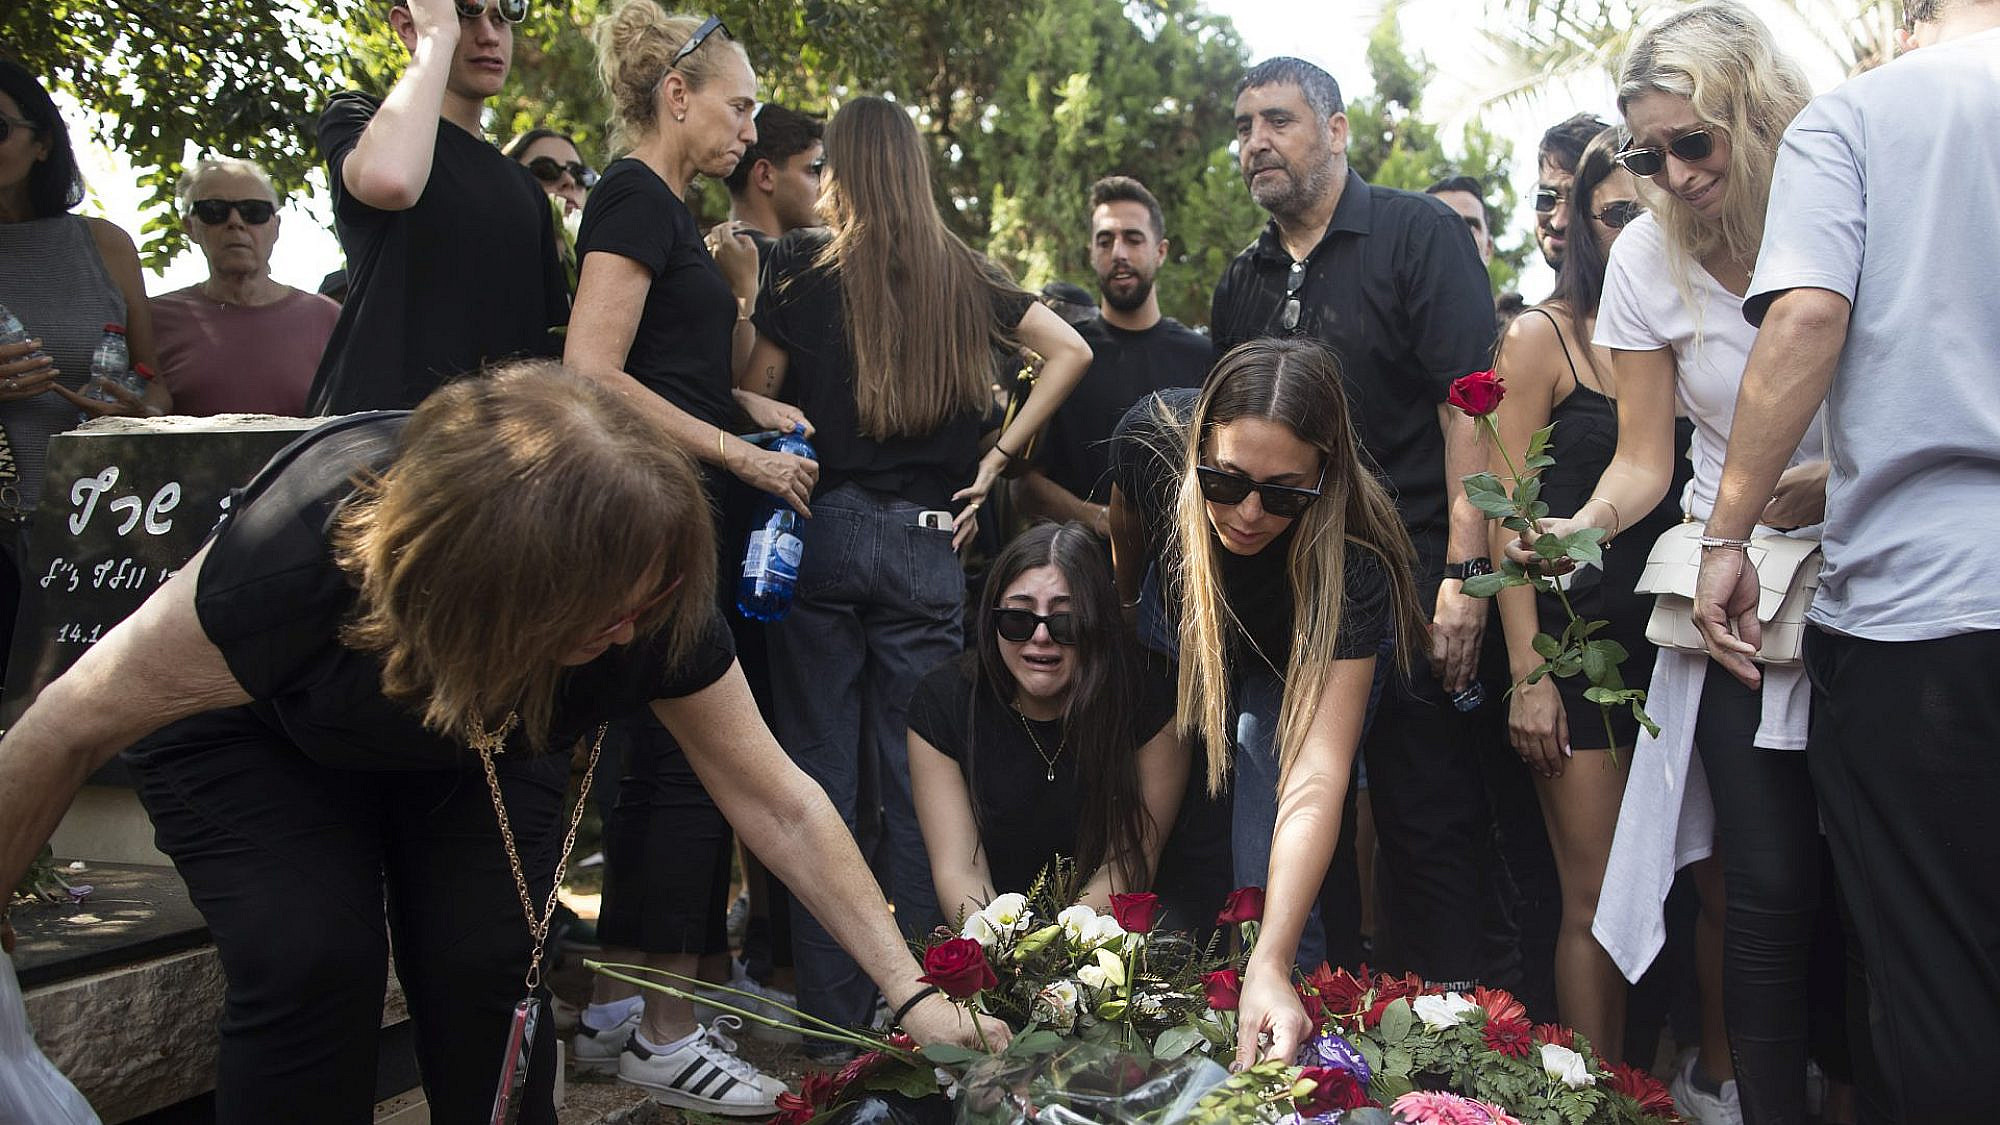 כל כך הרבה משפחות שכולות.הלווייתה של מאי נעים בת ה-24 בנרצחה במסיבה ברעים | צילום: Amir Levy/Getty Images